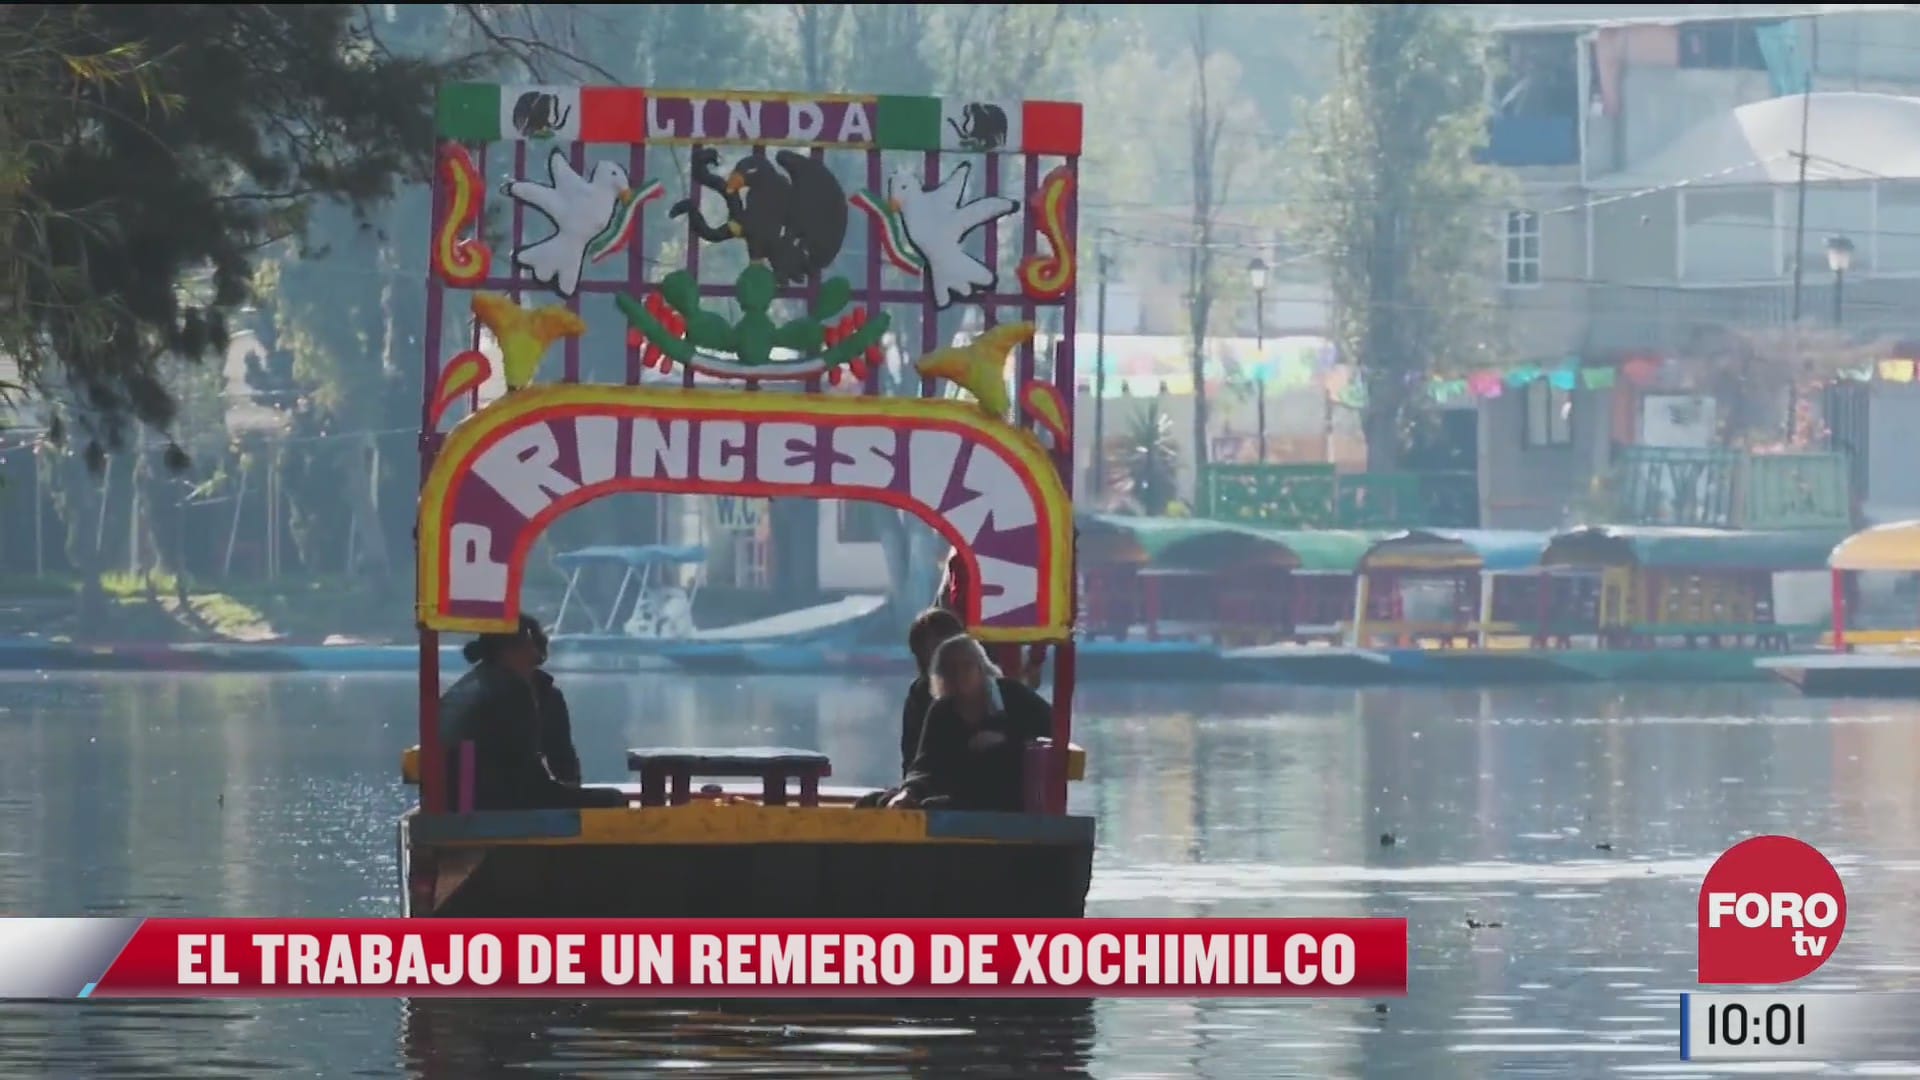 remero de xochimilco platica sobre su trabajo